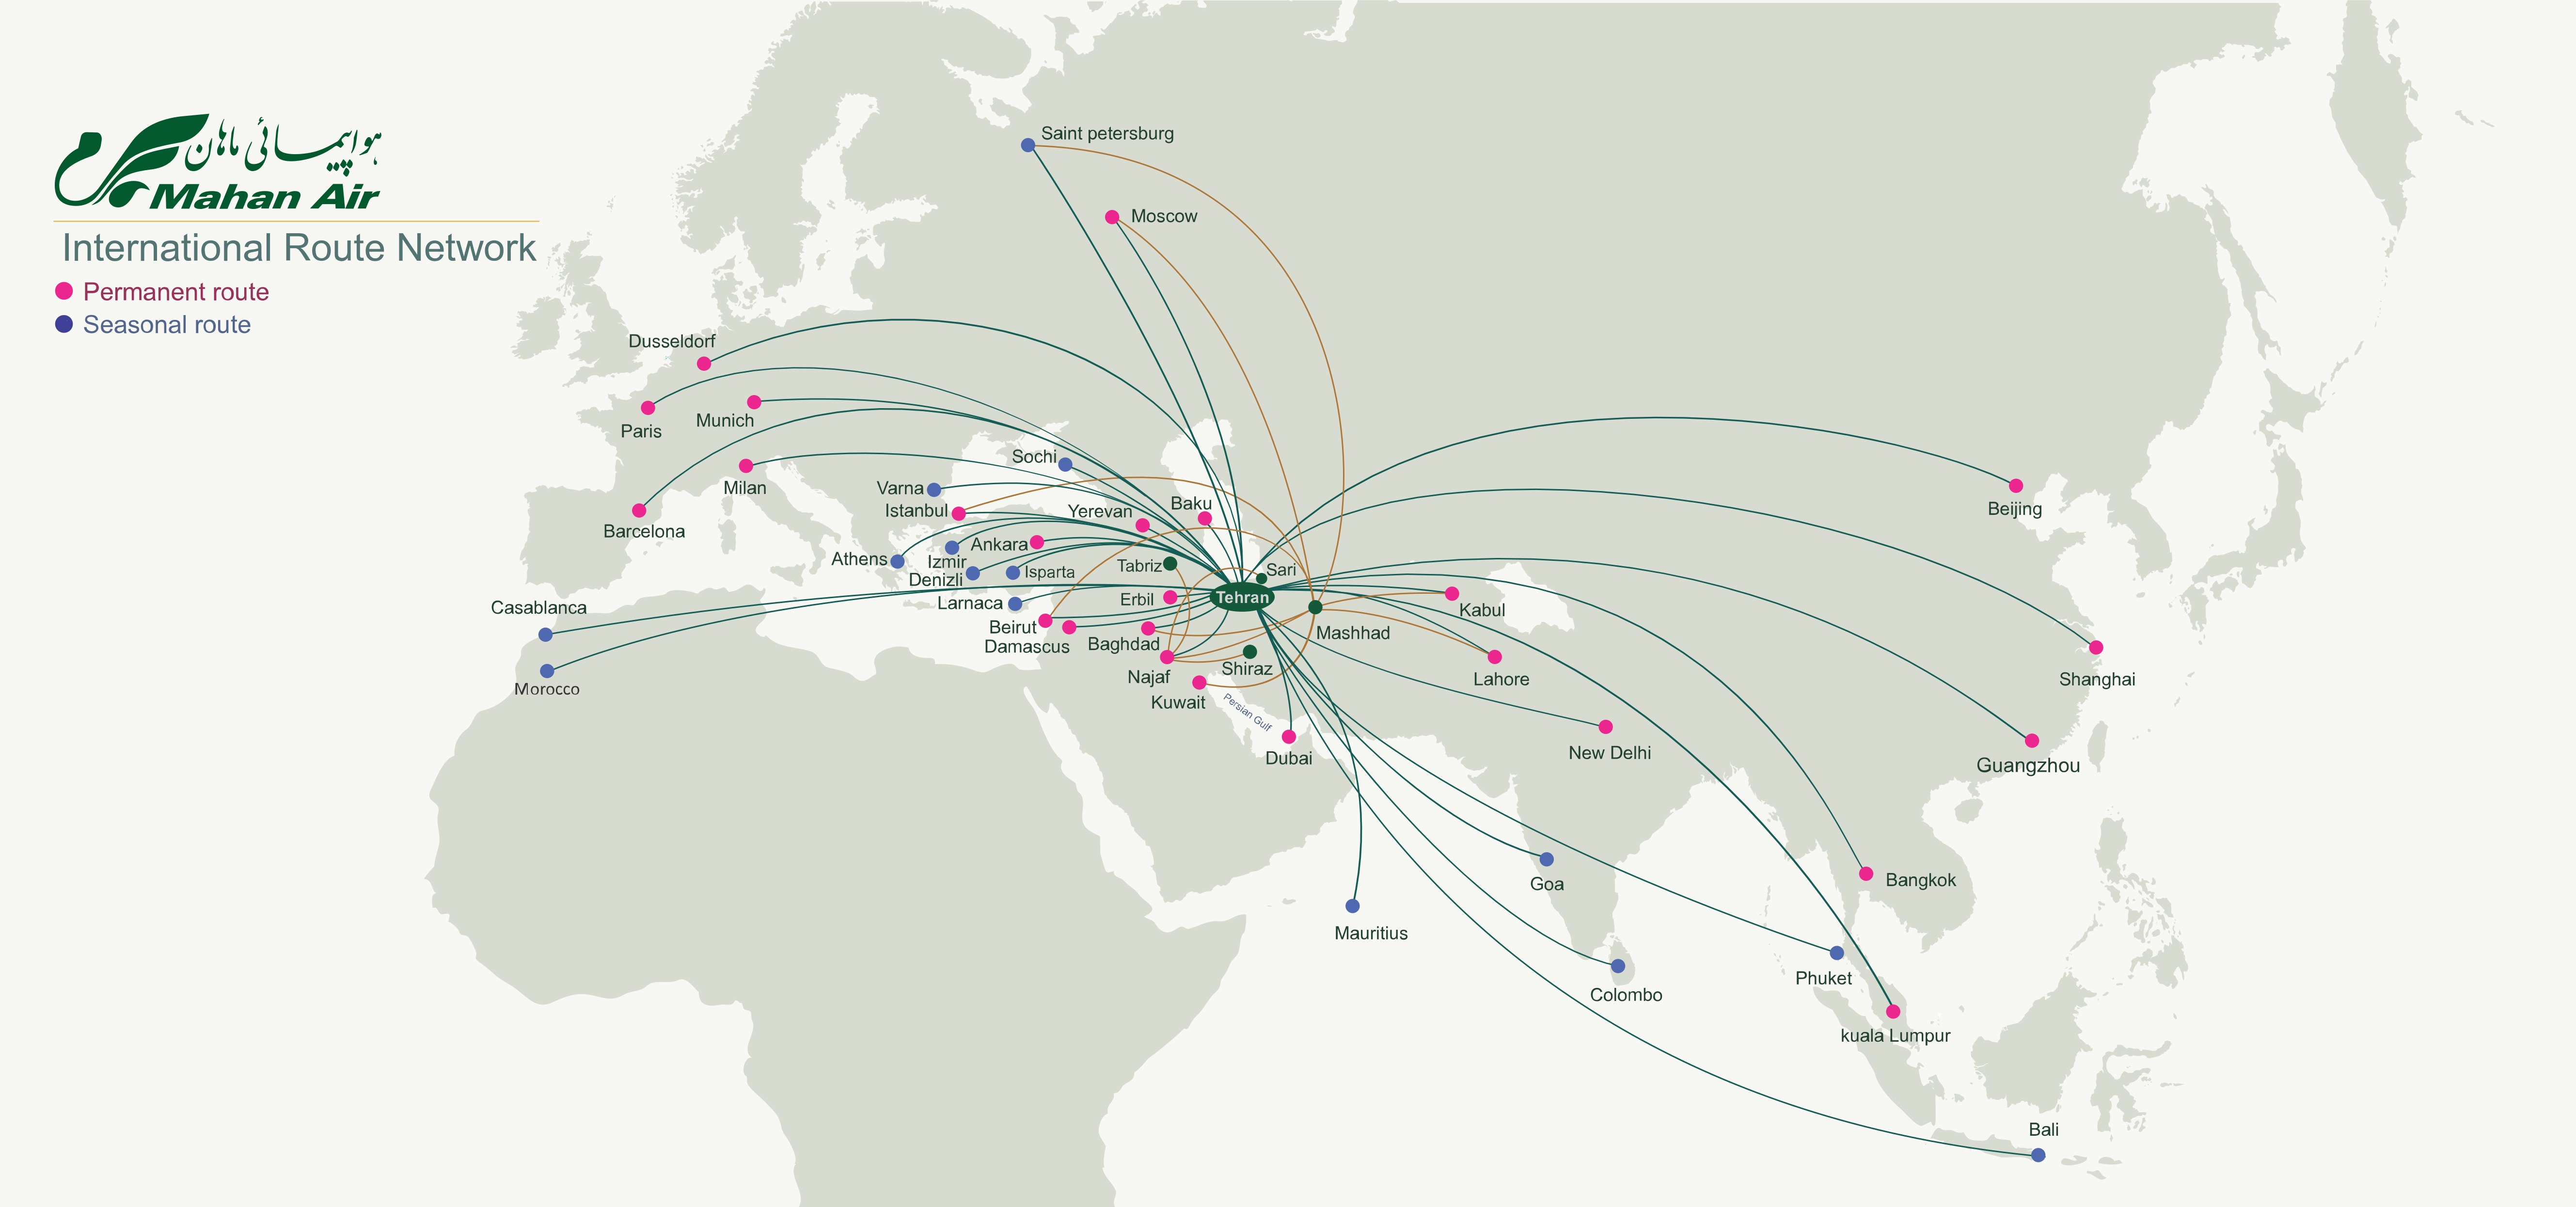 Маршрутная сеть авиакомпания. Маршрутная сеть Mahan Air. Карта полетов. Воздушные маршруты. Воздушные пути самолетов на карте.